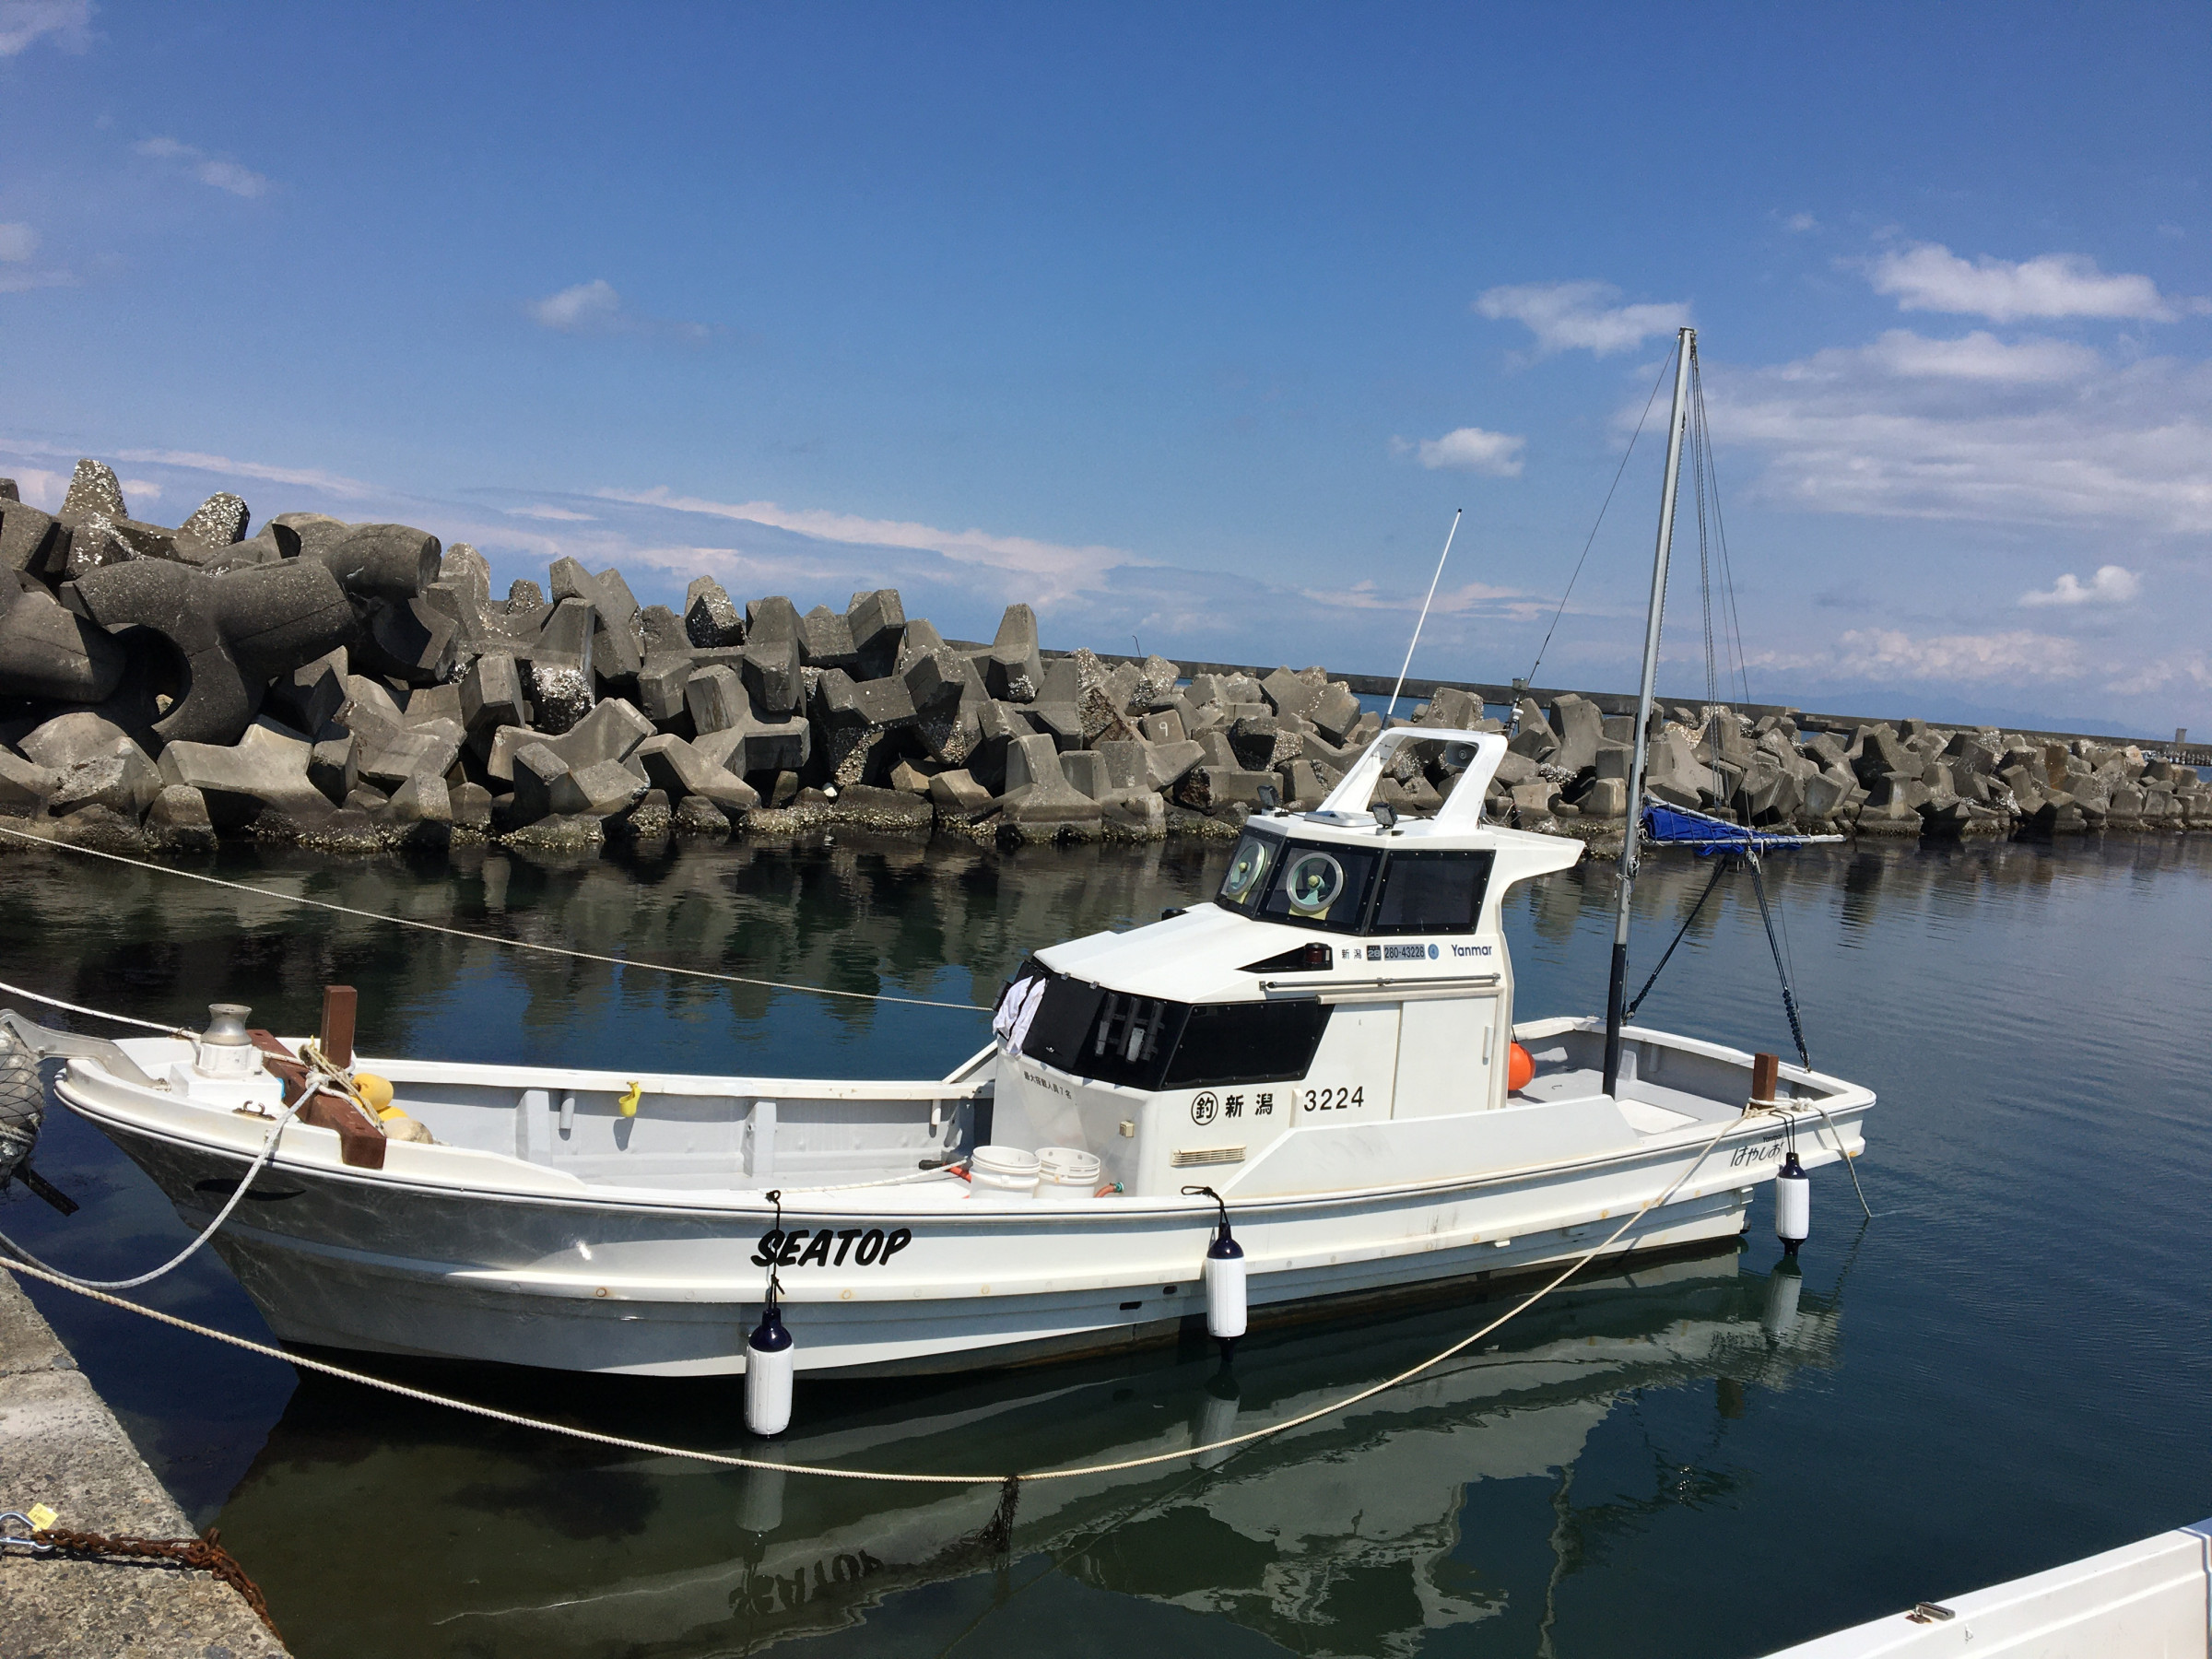 新潟の釣りは 釣り船 遊漁船シートップがご案内致します